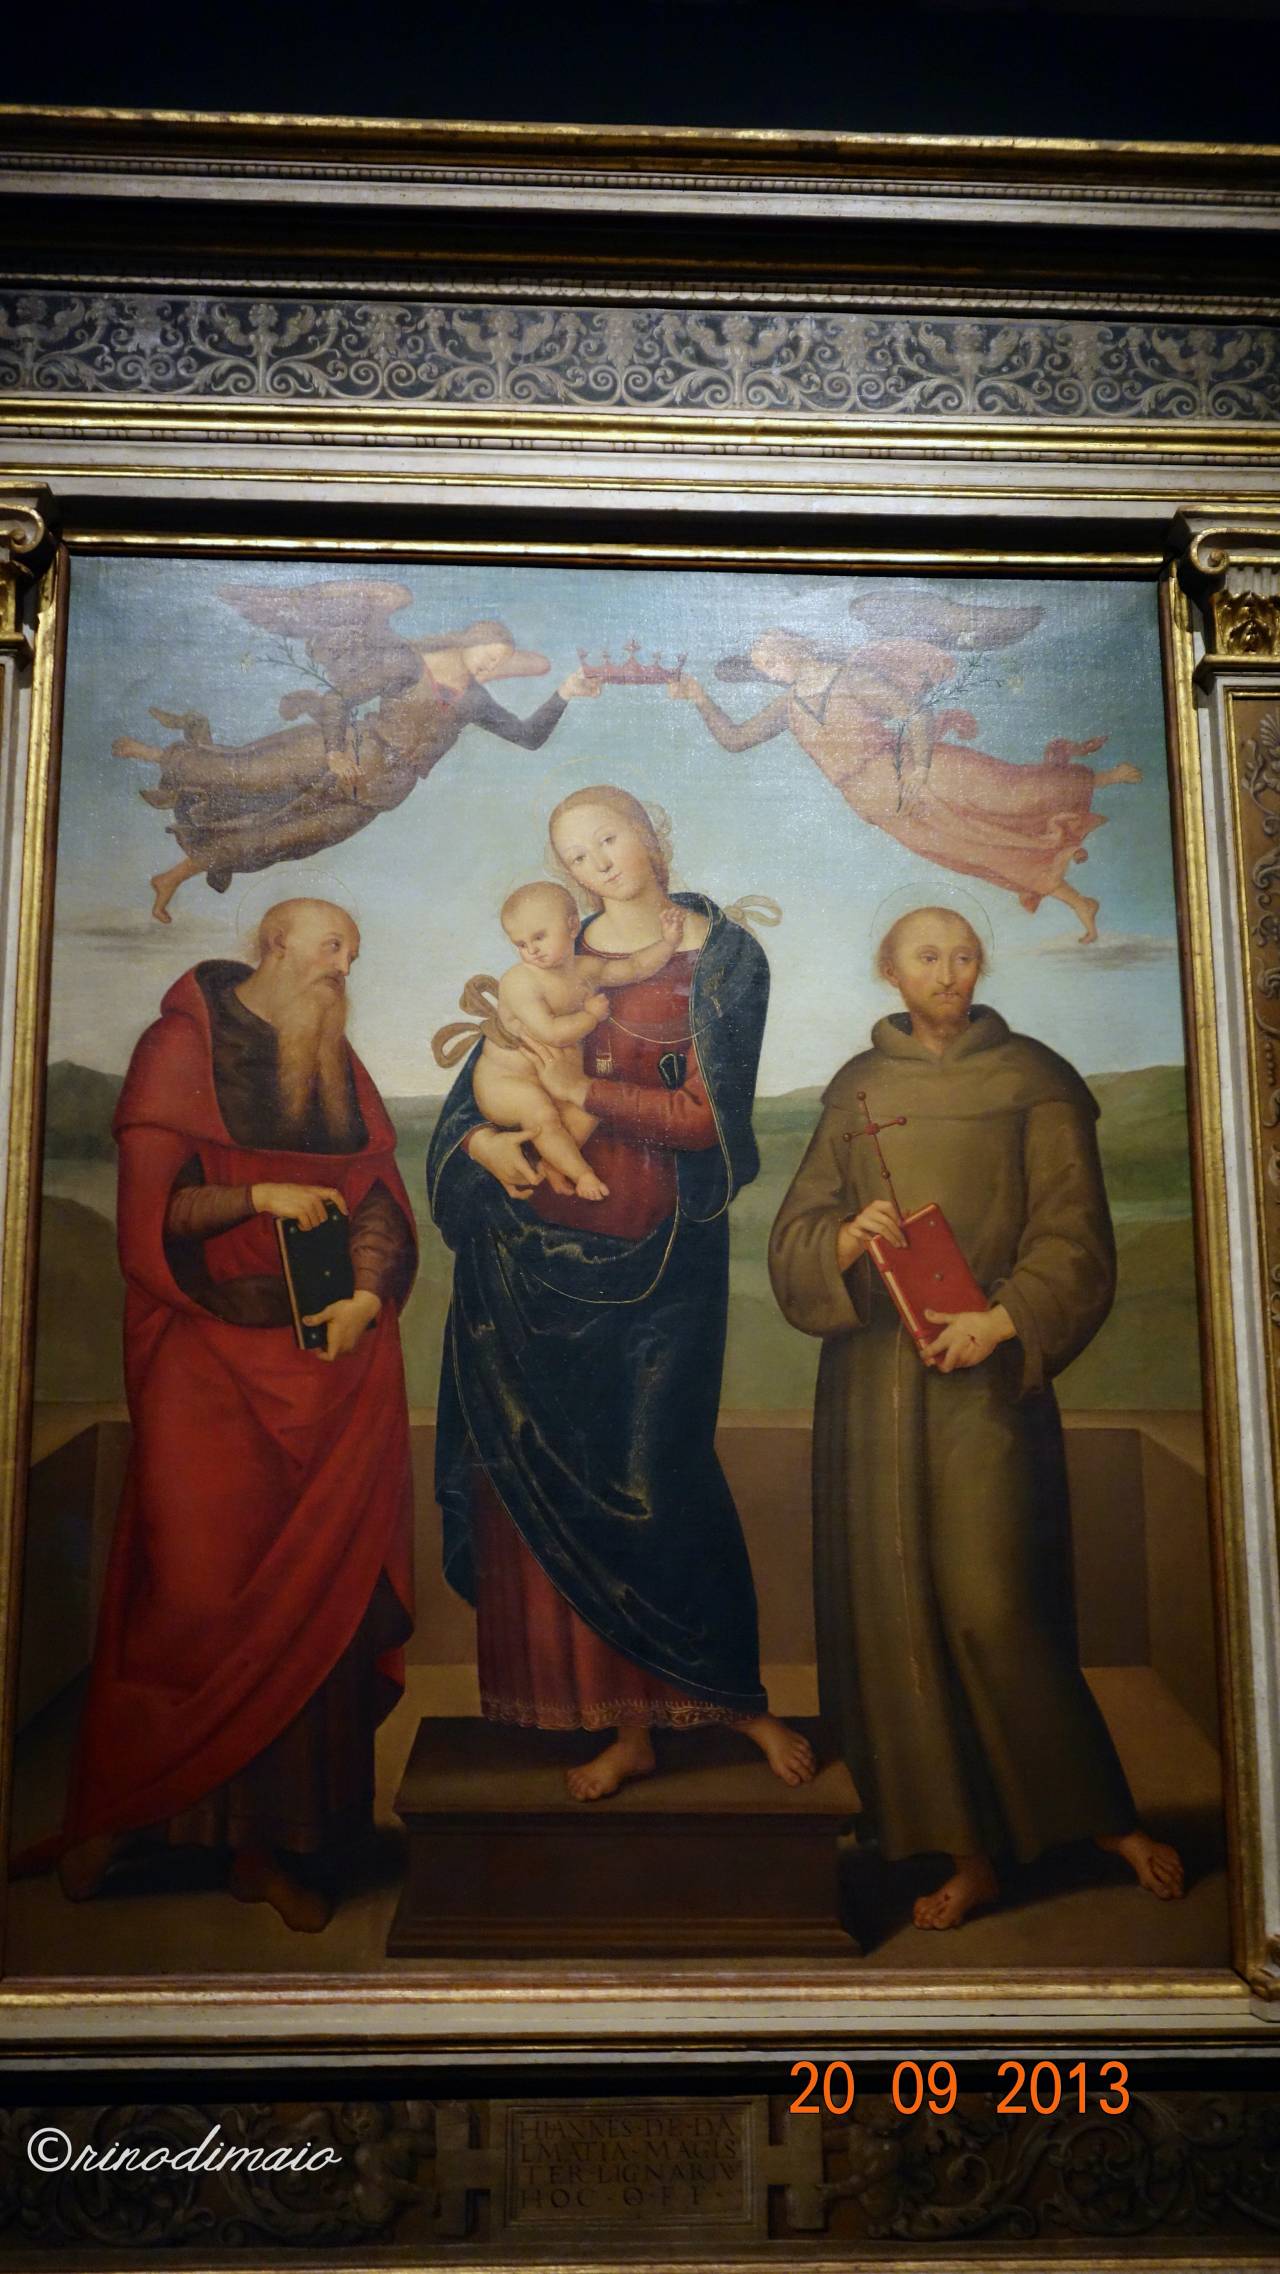 ©rinodimaio-Rotary visita mostra Perugino 20 settembre 2013-n.10